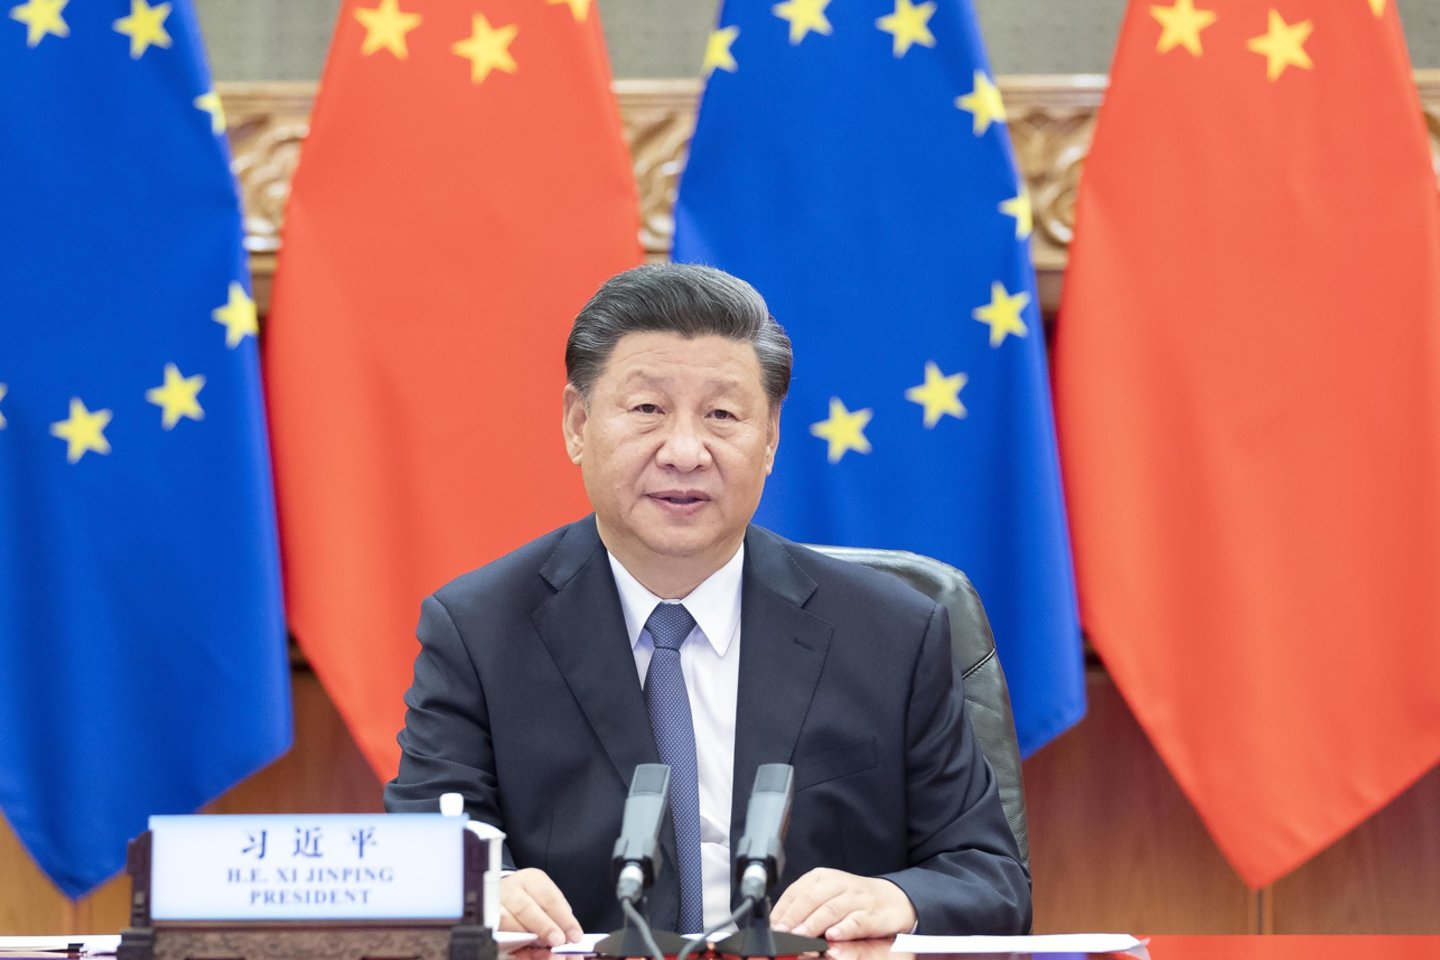 ​Europos Sąjungos lyderiai ateinantį mėnesį surengs specialų viršūnių susitikimą aptarti komplikuotiems Europos santykiams su Kinija.<br>SIPA press/Scanpix nuotr.